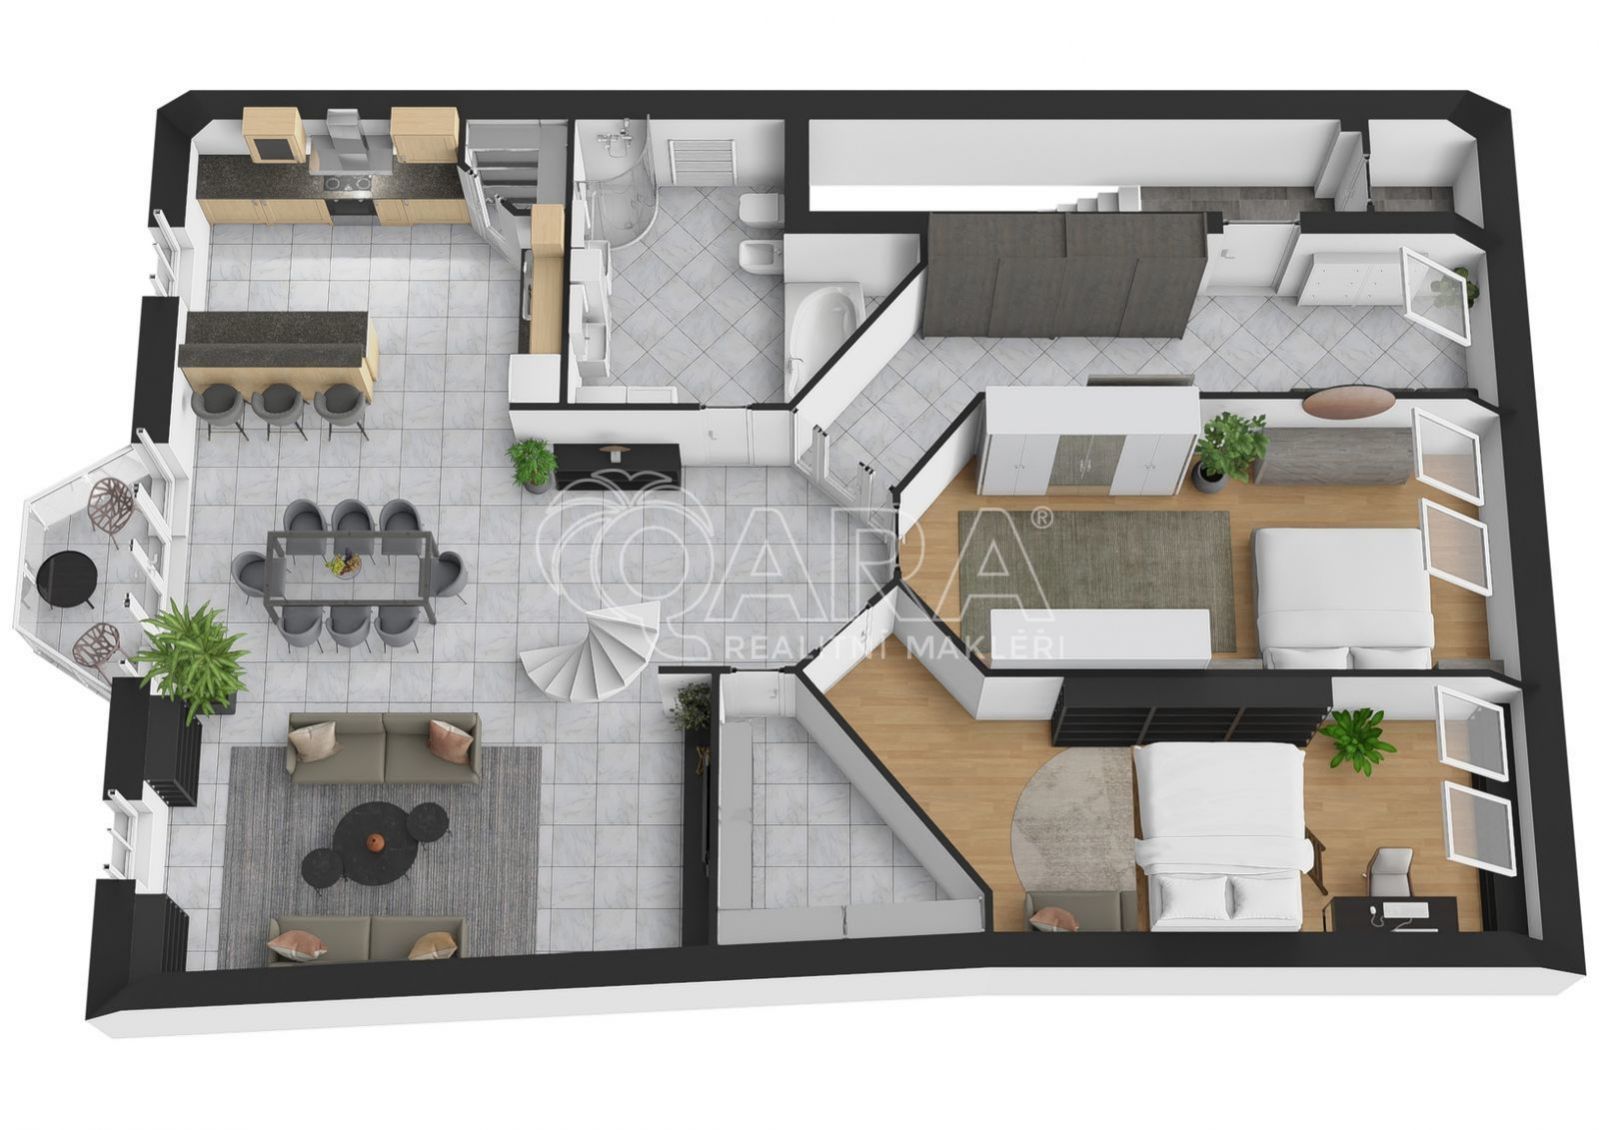 Exkluzivní pronájem loftového bytu 5+kk (181 m2) s terasou v historickém centru Berouna, obrázek č. 3